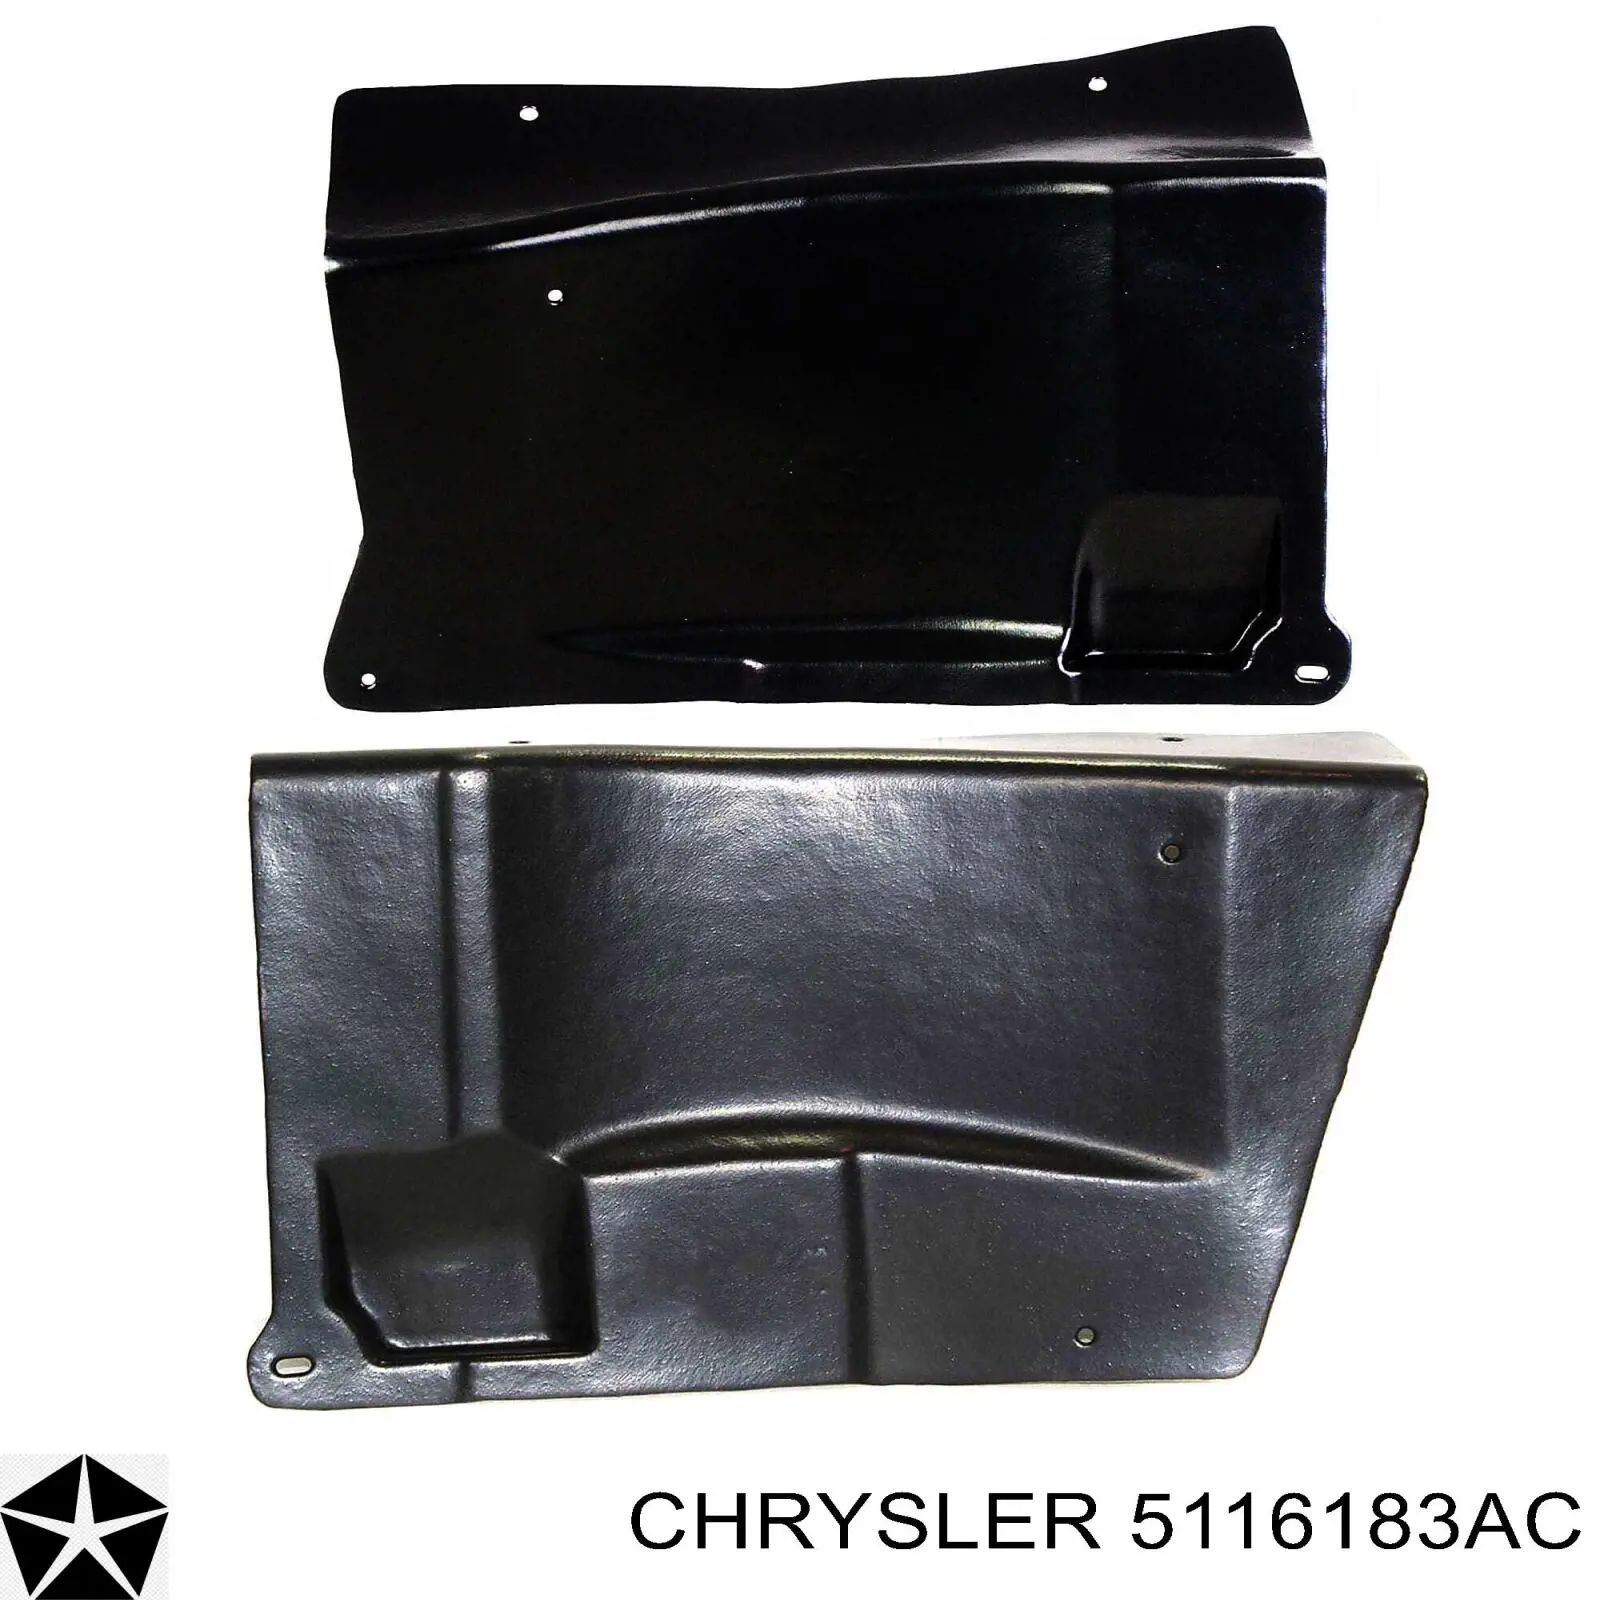 5116183AC Chrysler захист двигуна, піддона (моторного відсіку)